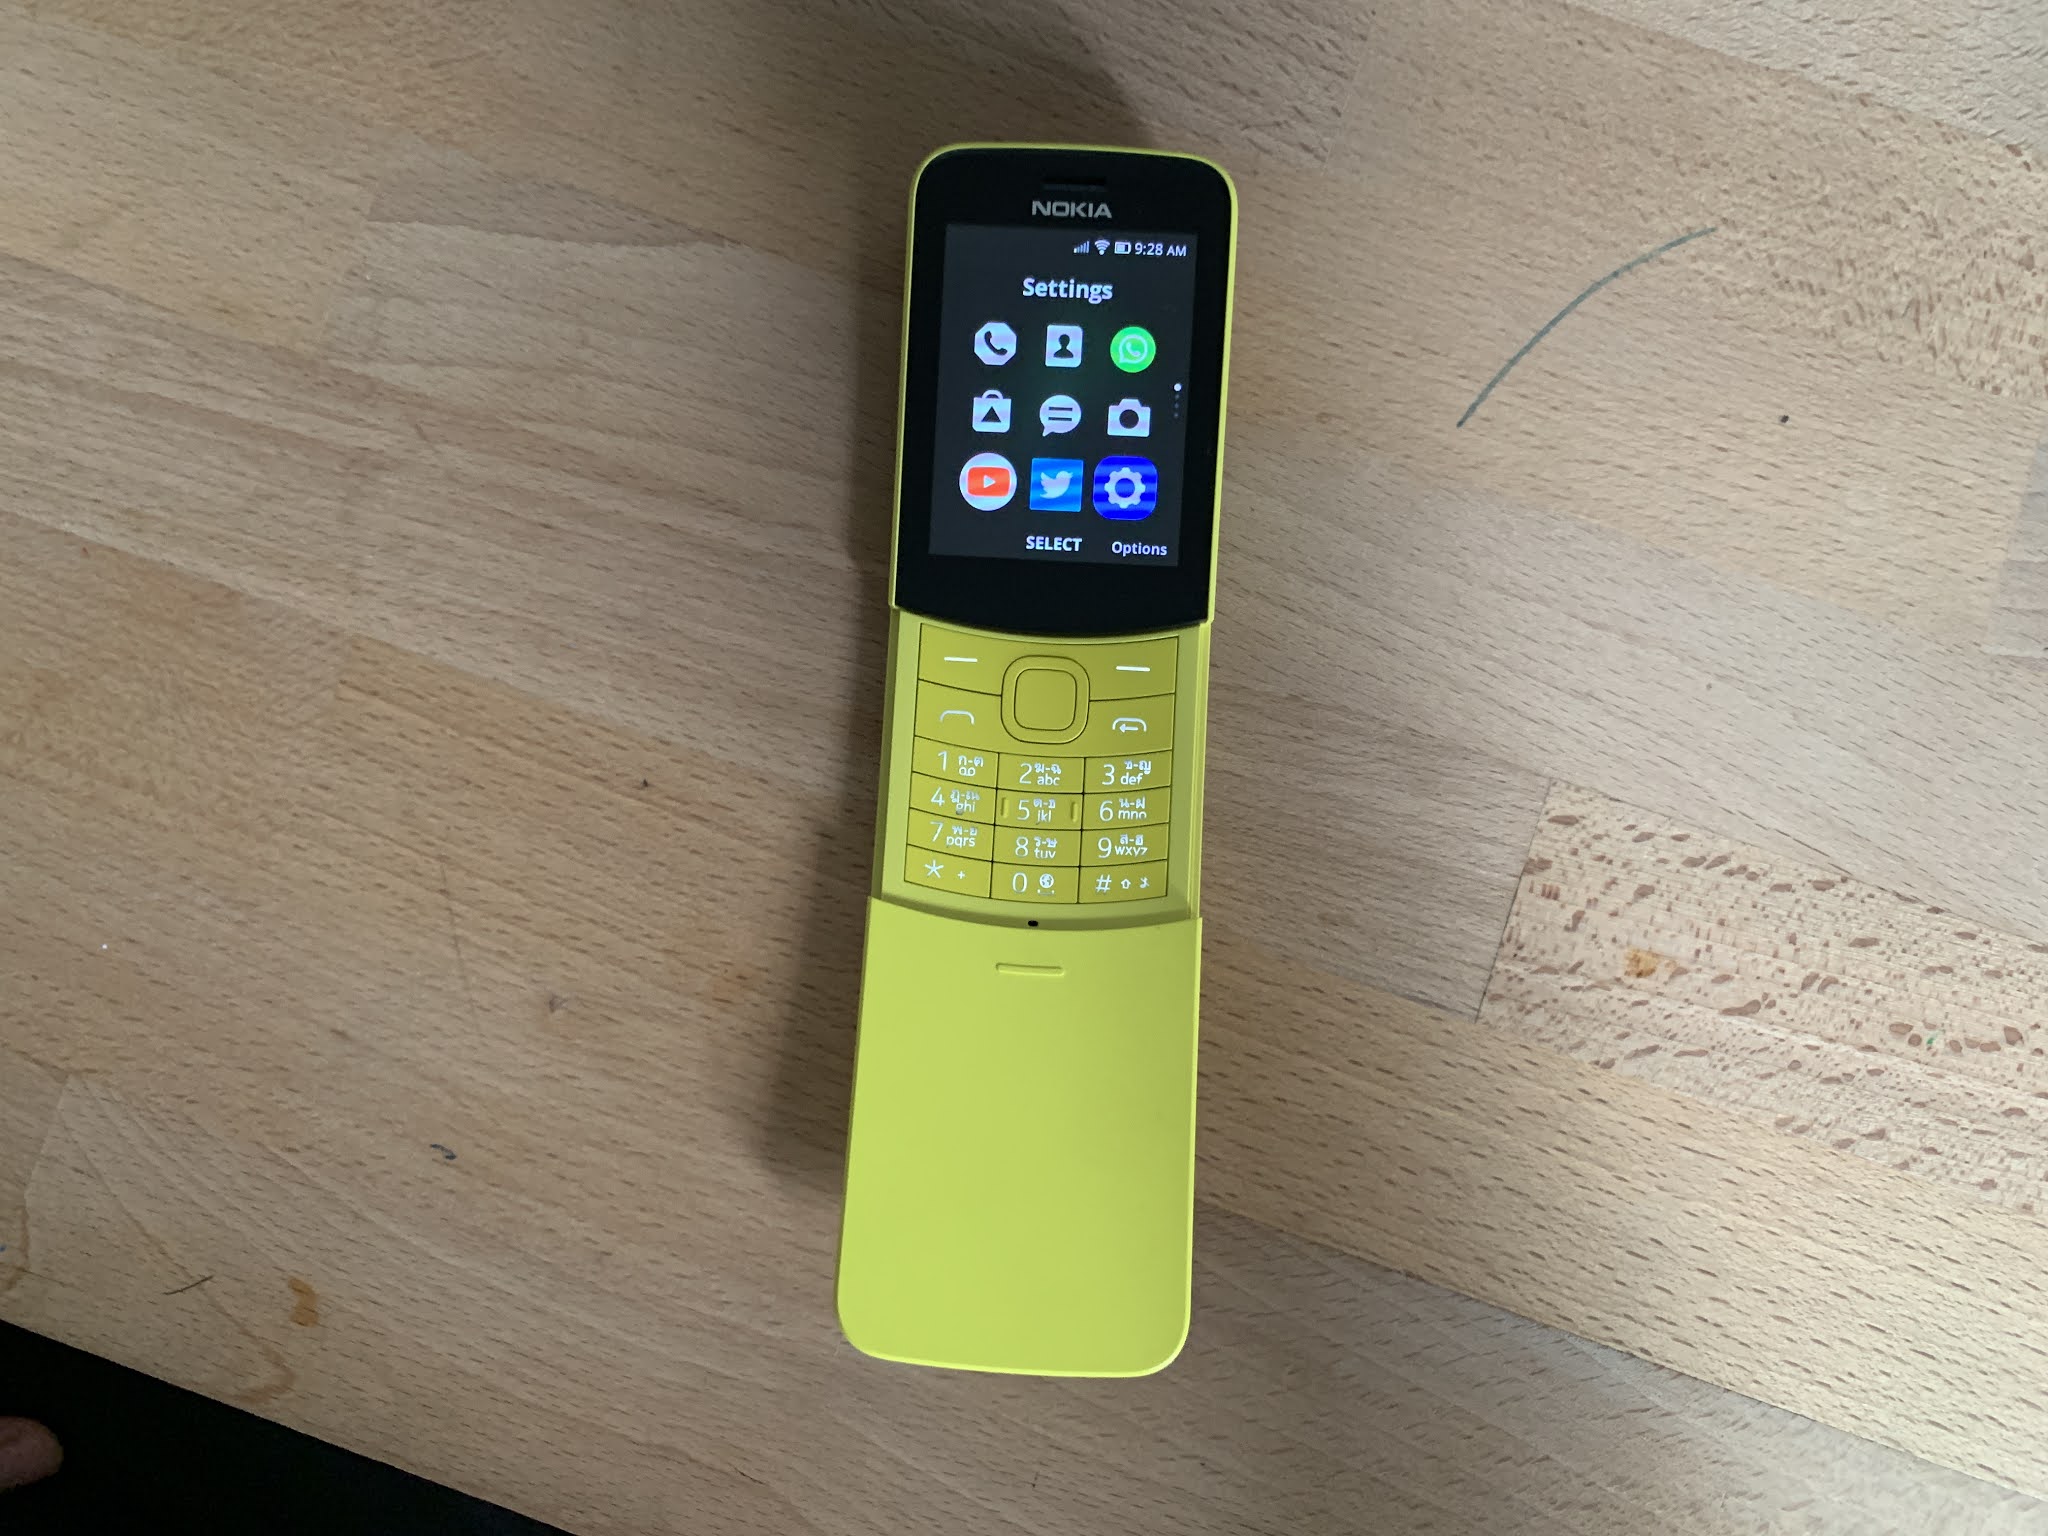 Nokia 8110 4G là một trong những sản phẩm được đánh giá cao về công nghệ và thiết kế độc đáo. Nếu bạn là một người yêu thích công nghệ và thích khám phá những sản phẩm mới, hãy xem ngay hình ảnh của Nokia 8110 4G để trải nghiệm cảm giác thú vị mà sản phẩm mang lại.